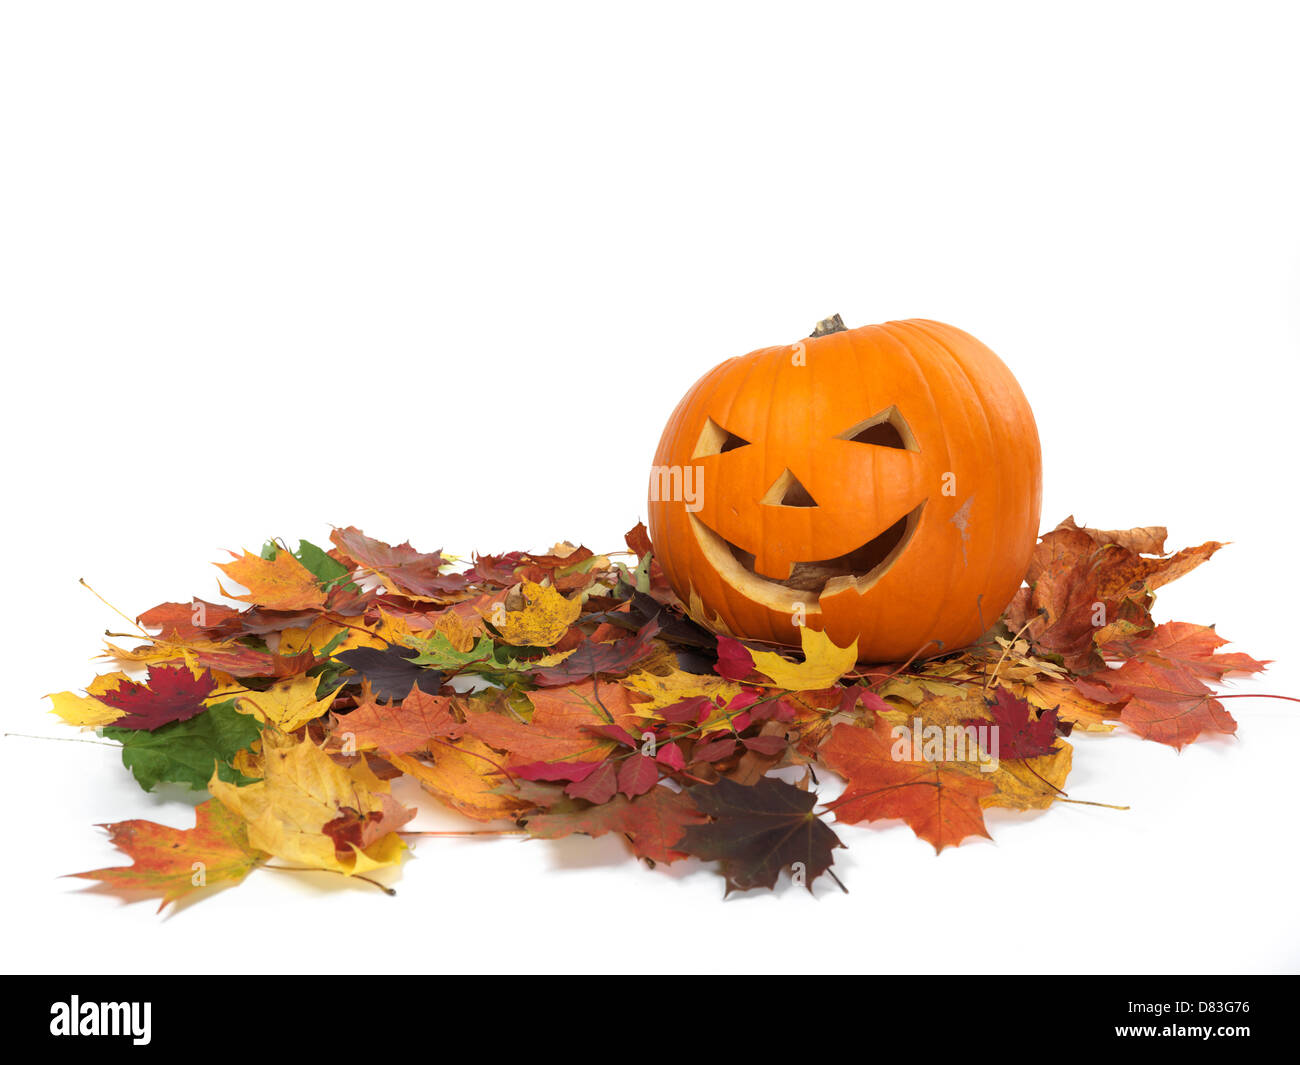 Intagliato zucca sorridente sulla colorata cadono le foglie. Jack-o-lantern simbolo di Halloween. Isolato su sfondo bianco. Foto Stock